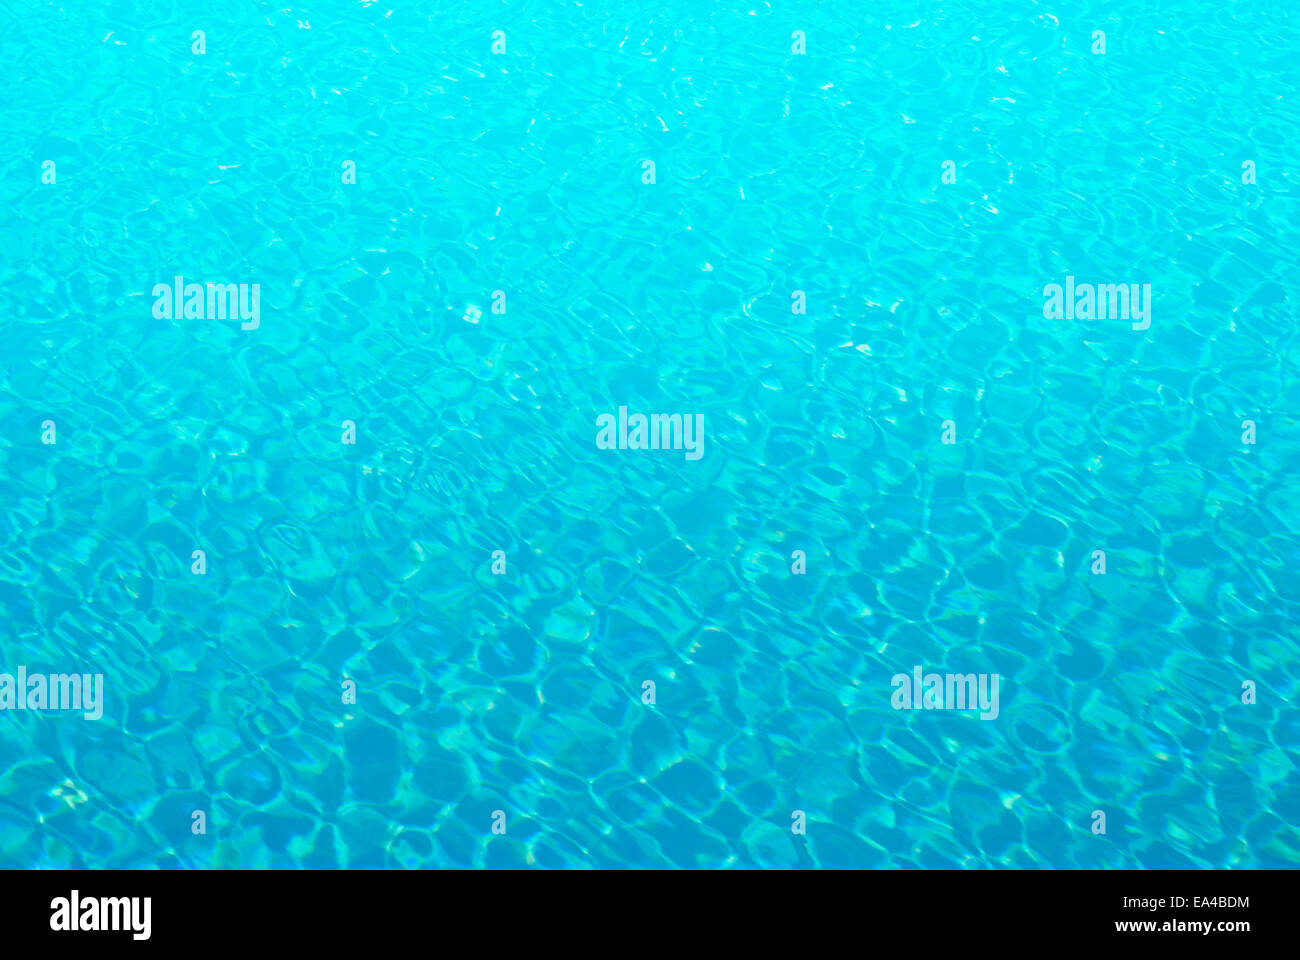 Soleil bleu de l'eau peut être utilisée pour le fond Banque D'Images